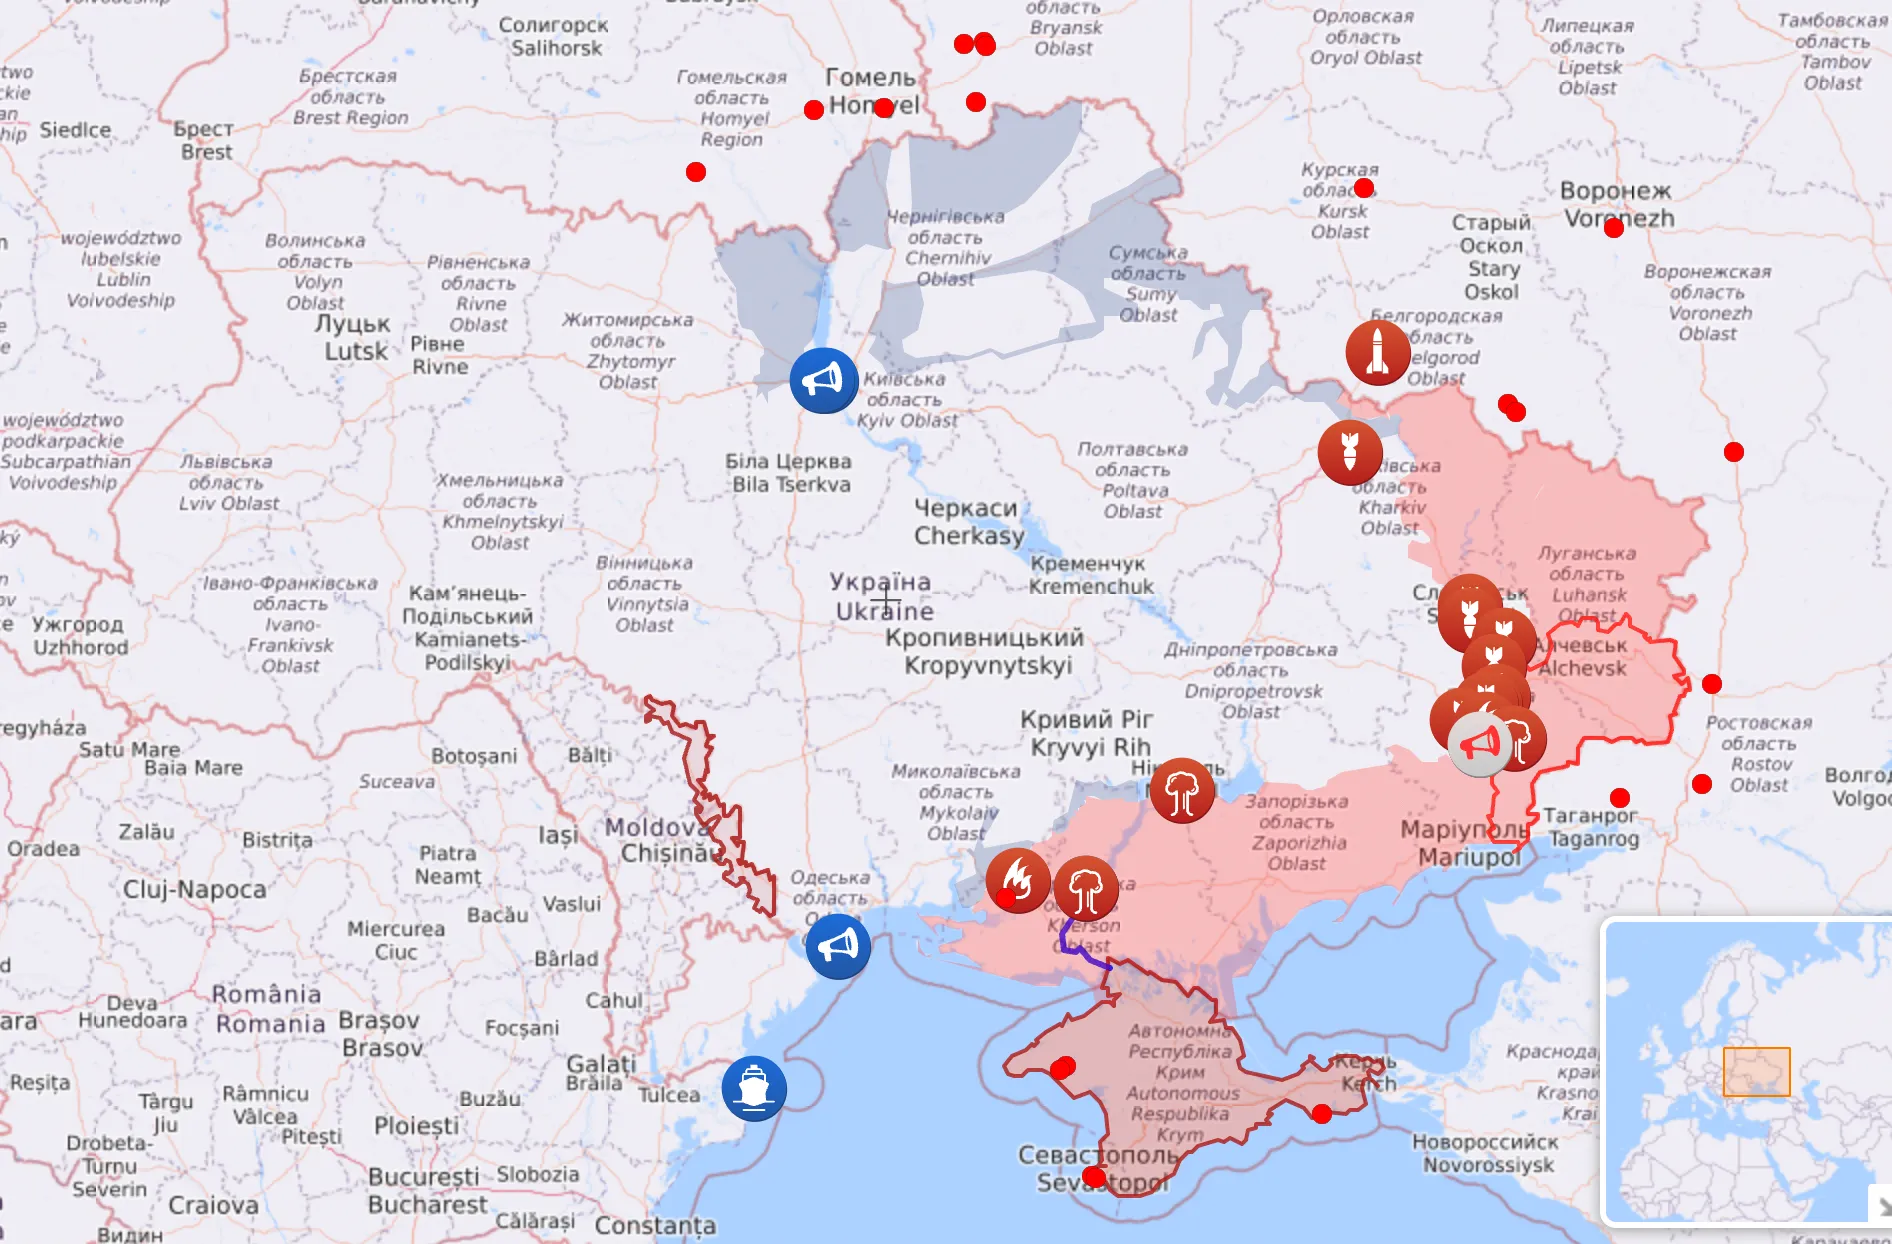 Карта боевых действий в Украине на 30 июля